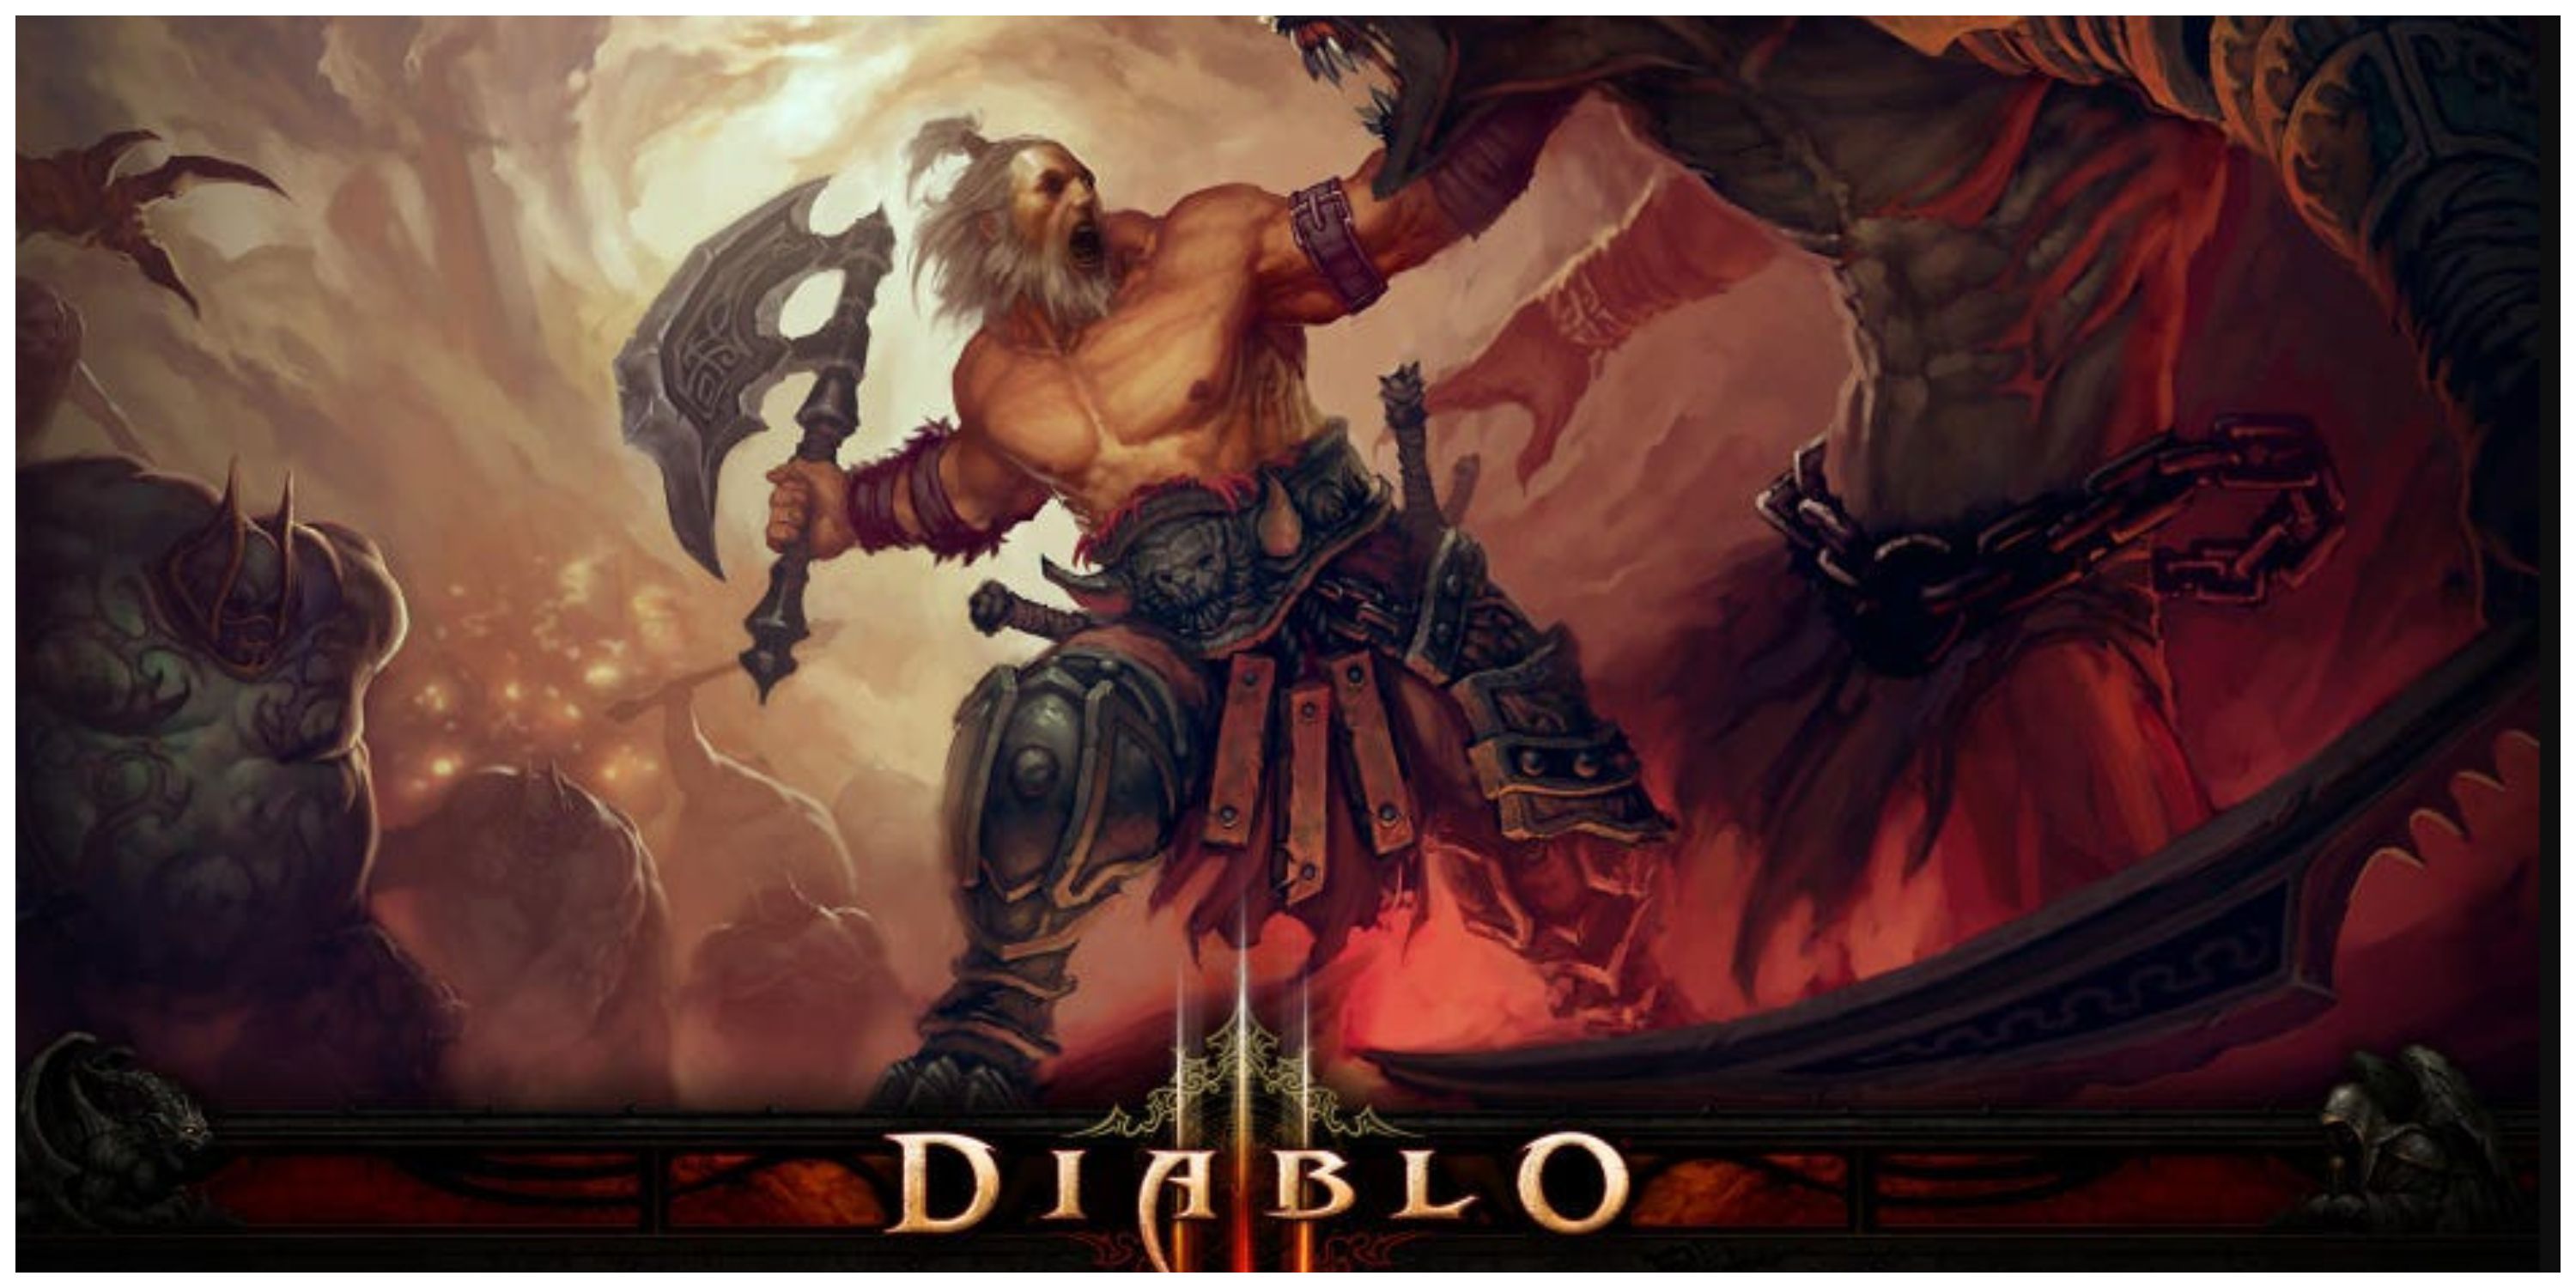 Diablo 3 character